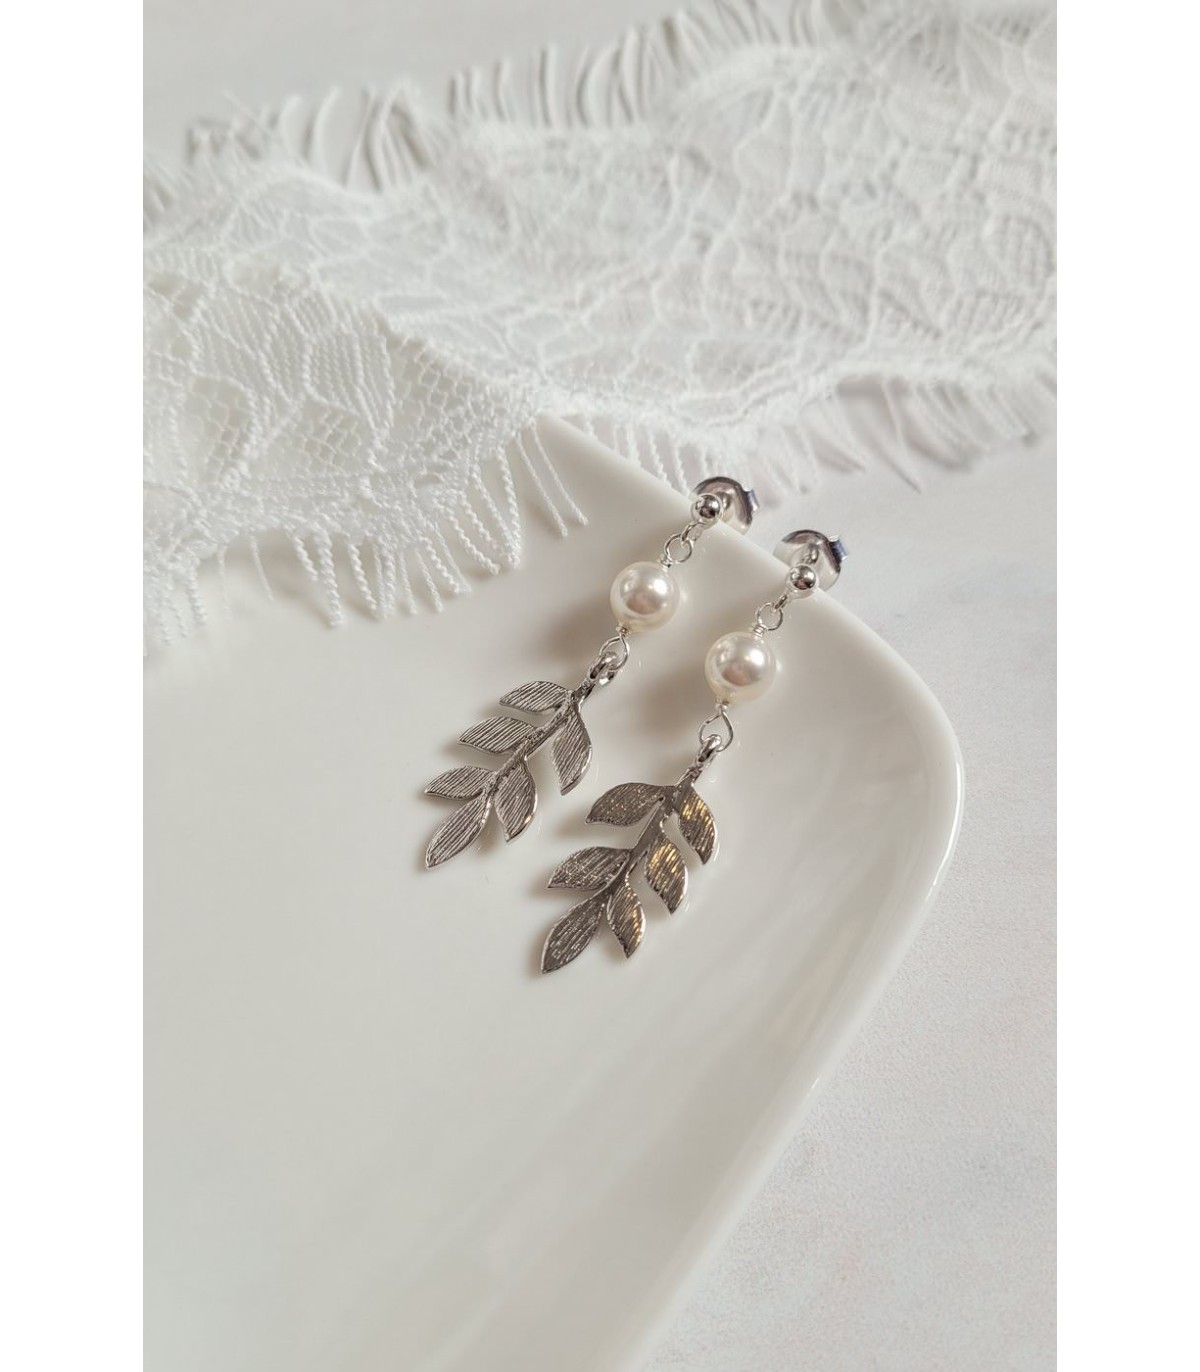 Boucles d'oreilles Rameau avec perle nacrée et feuilles dorées pour un mariage champetre.